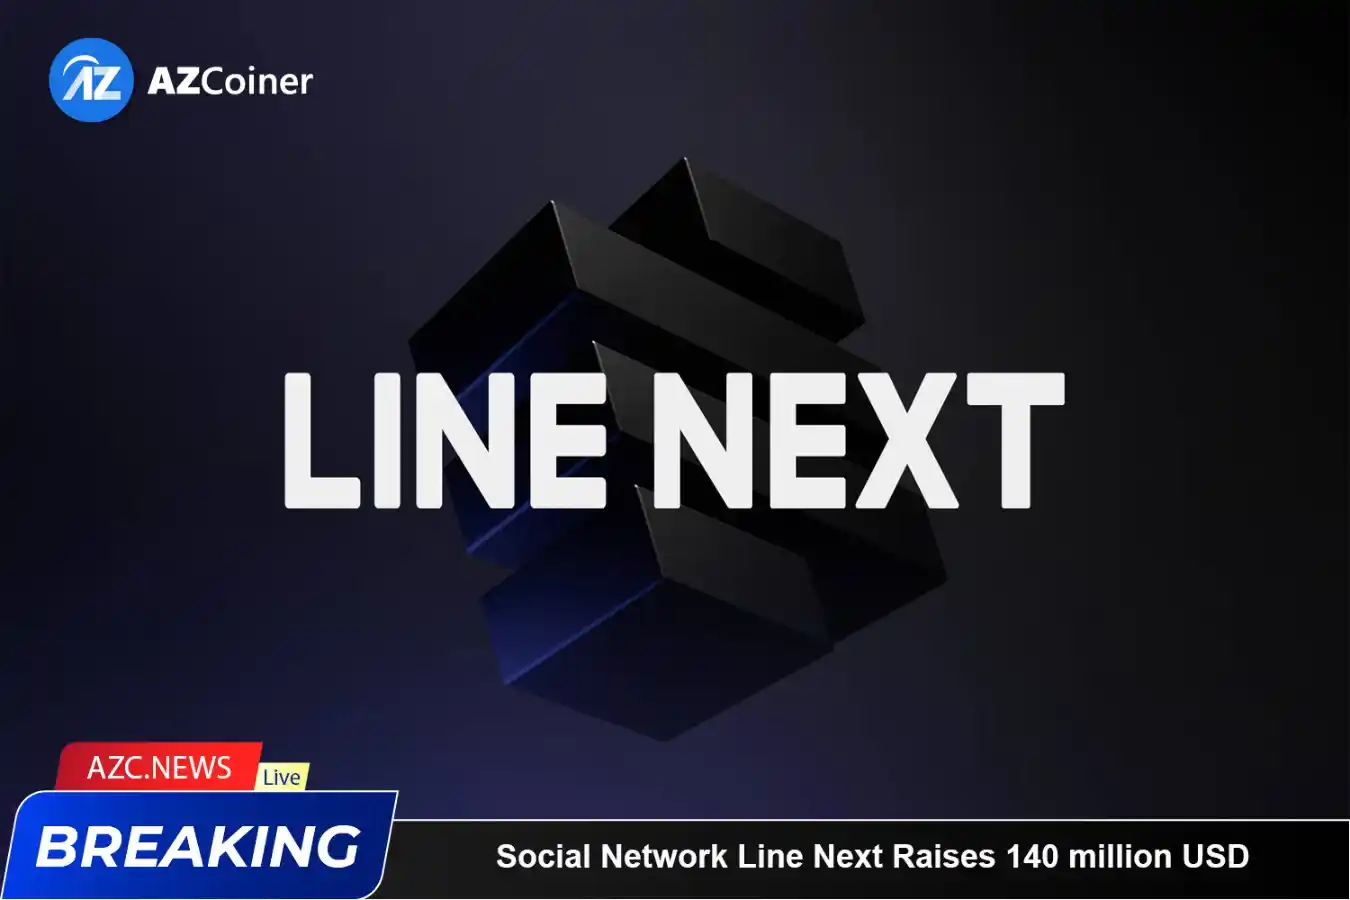 The Nft Branch Of Social Network Line Next Raises 140 Million Usd_65b979684c9ec.webp